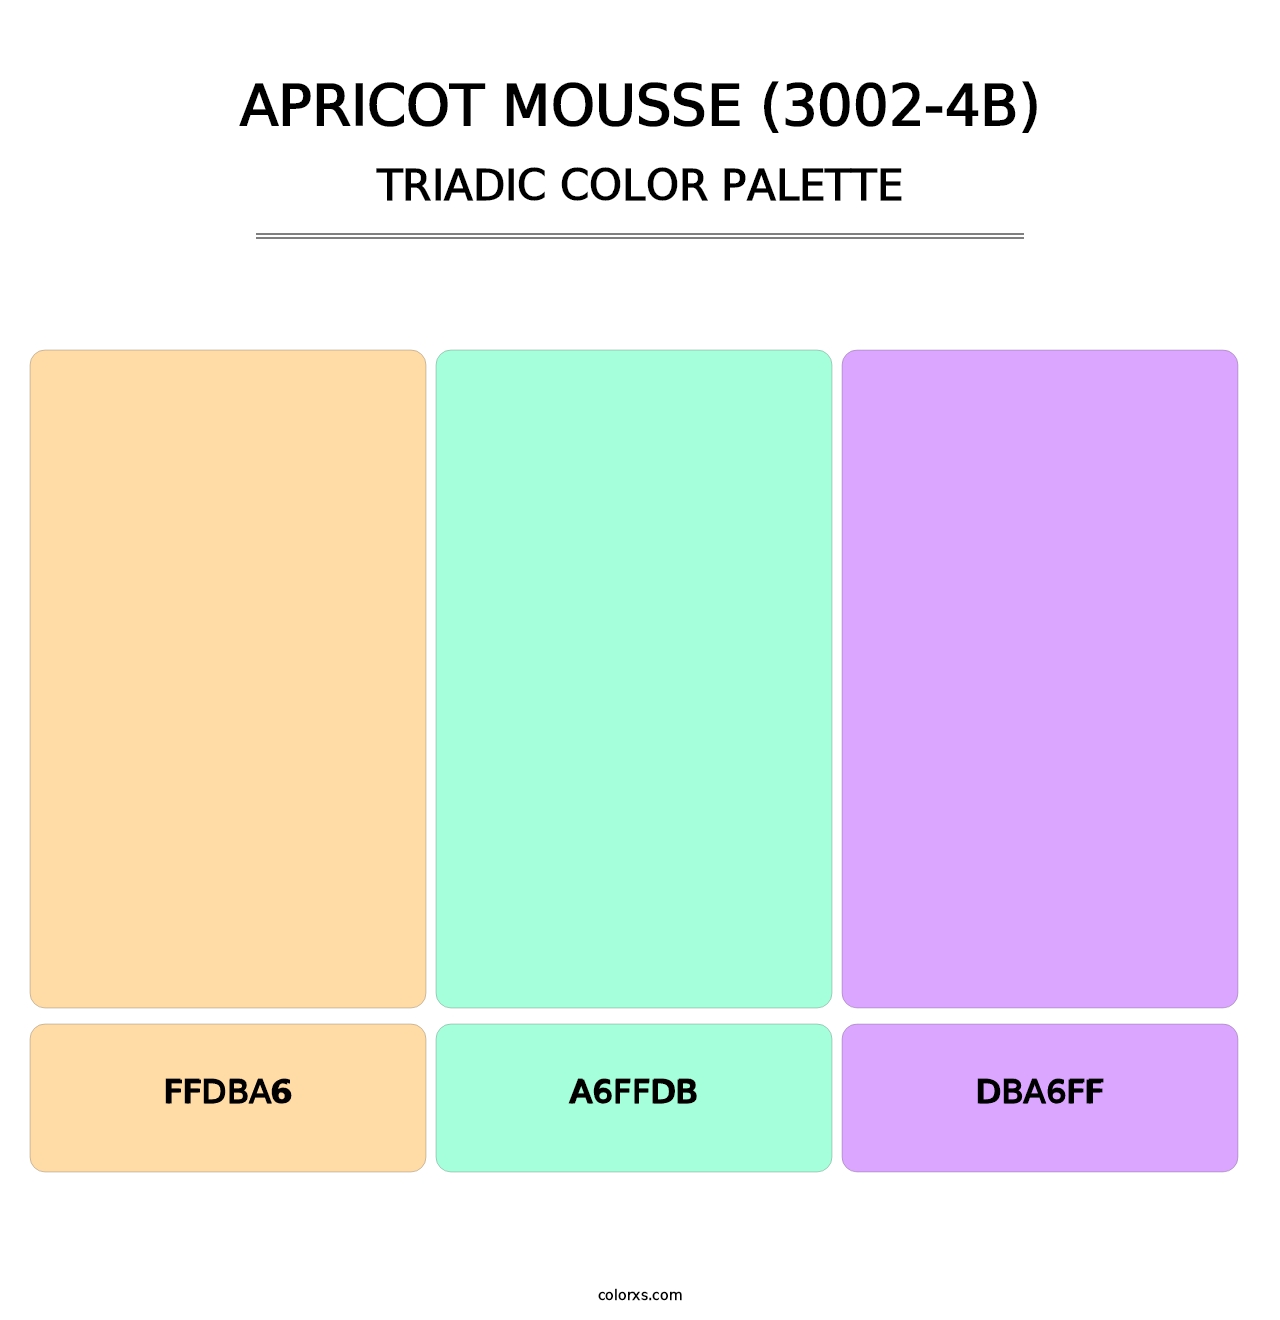 Apricot Mousse (3002-4B) - Triadic Color Palette